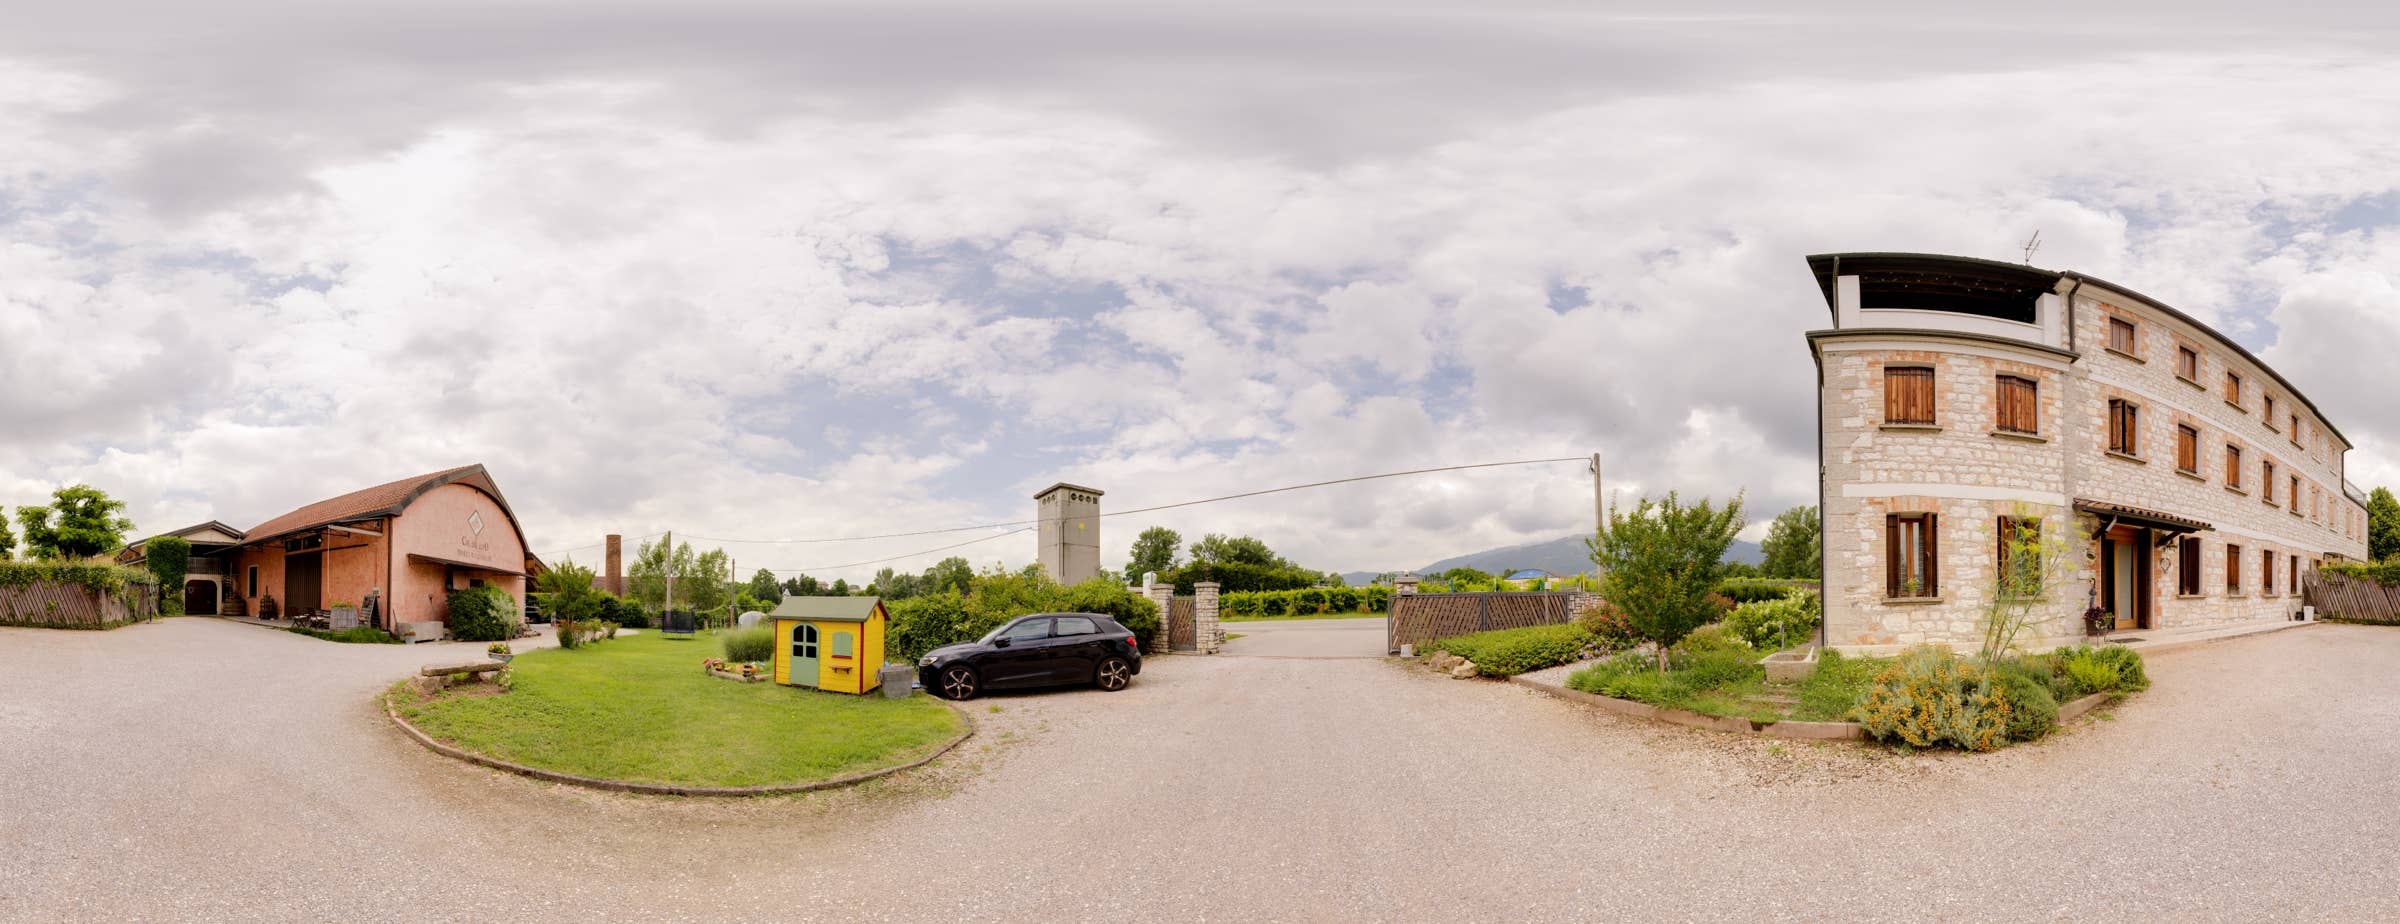 Η πανοραμική εικόνα 360° δείχνει την αυλή του οινοποιείου Col del Lupo. 